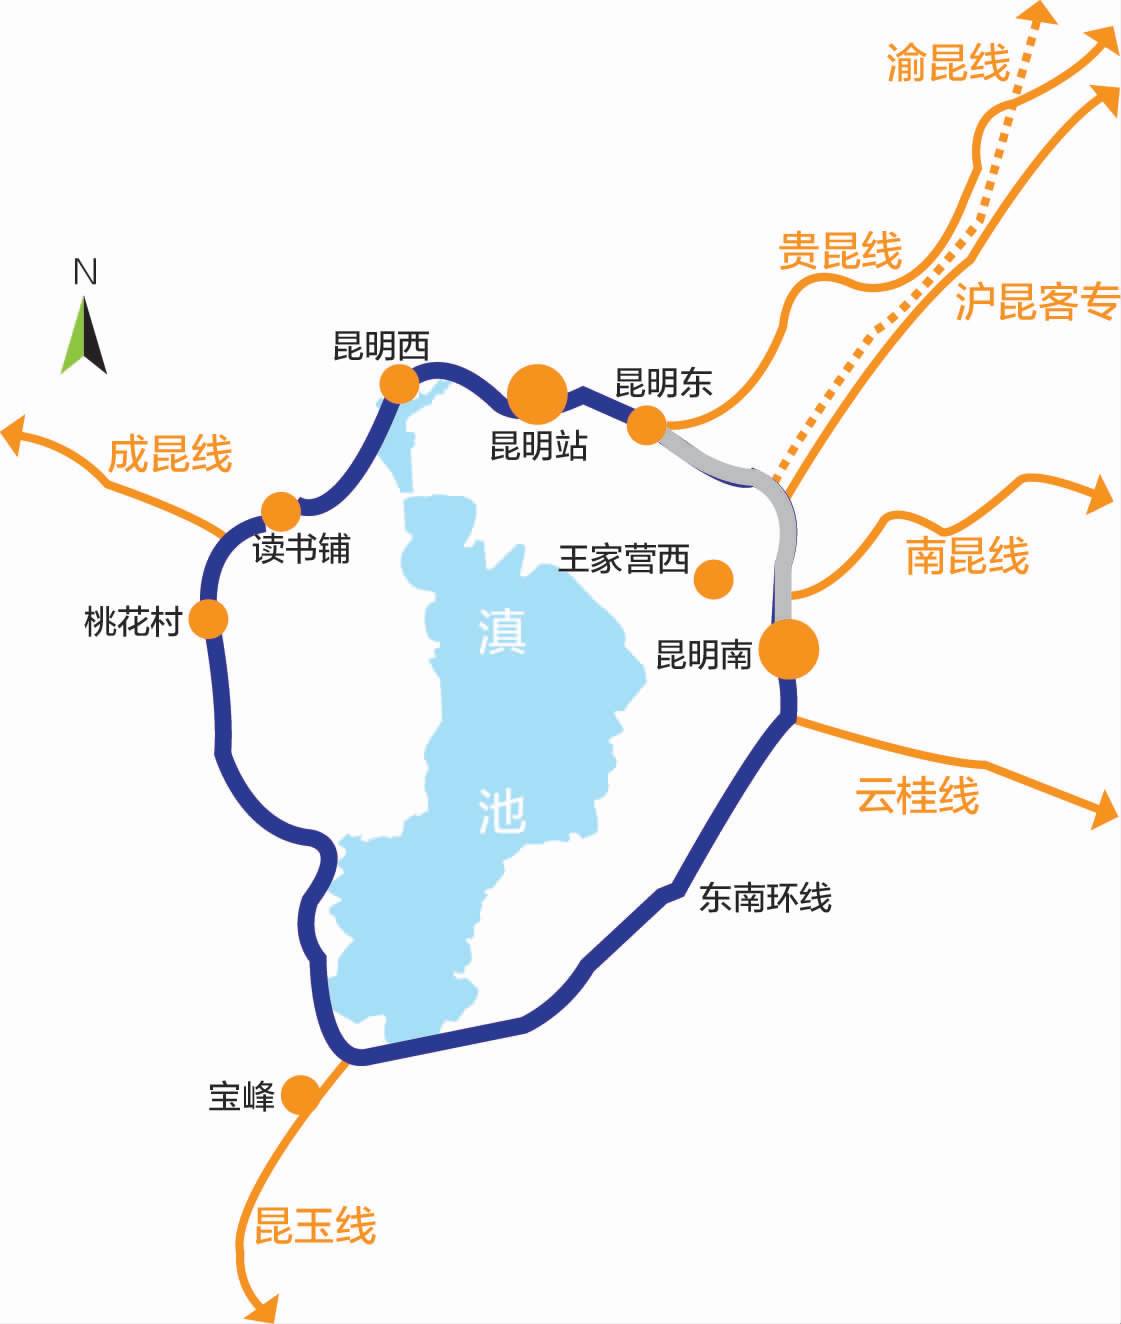 渝昆高铁渝昆高铁力争年内动工经过重庆,四川,贵州,云南三省一市正线